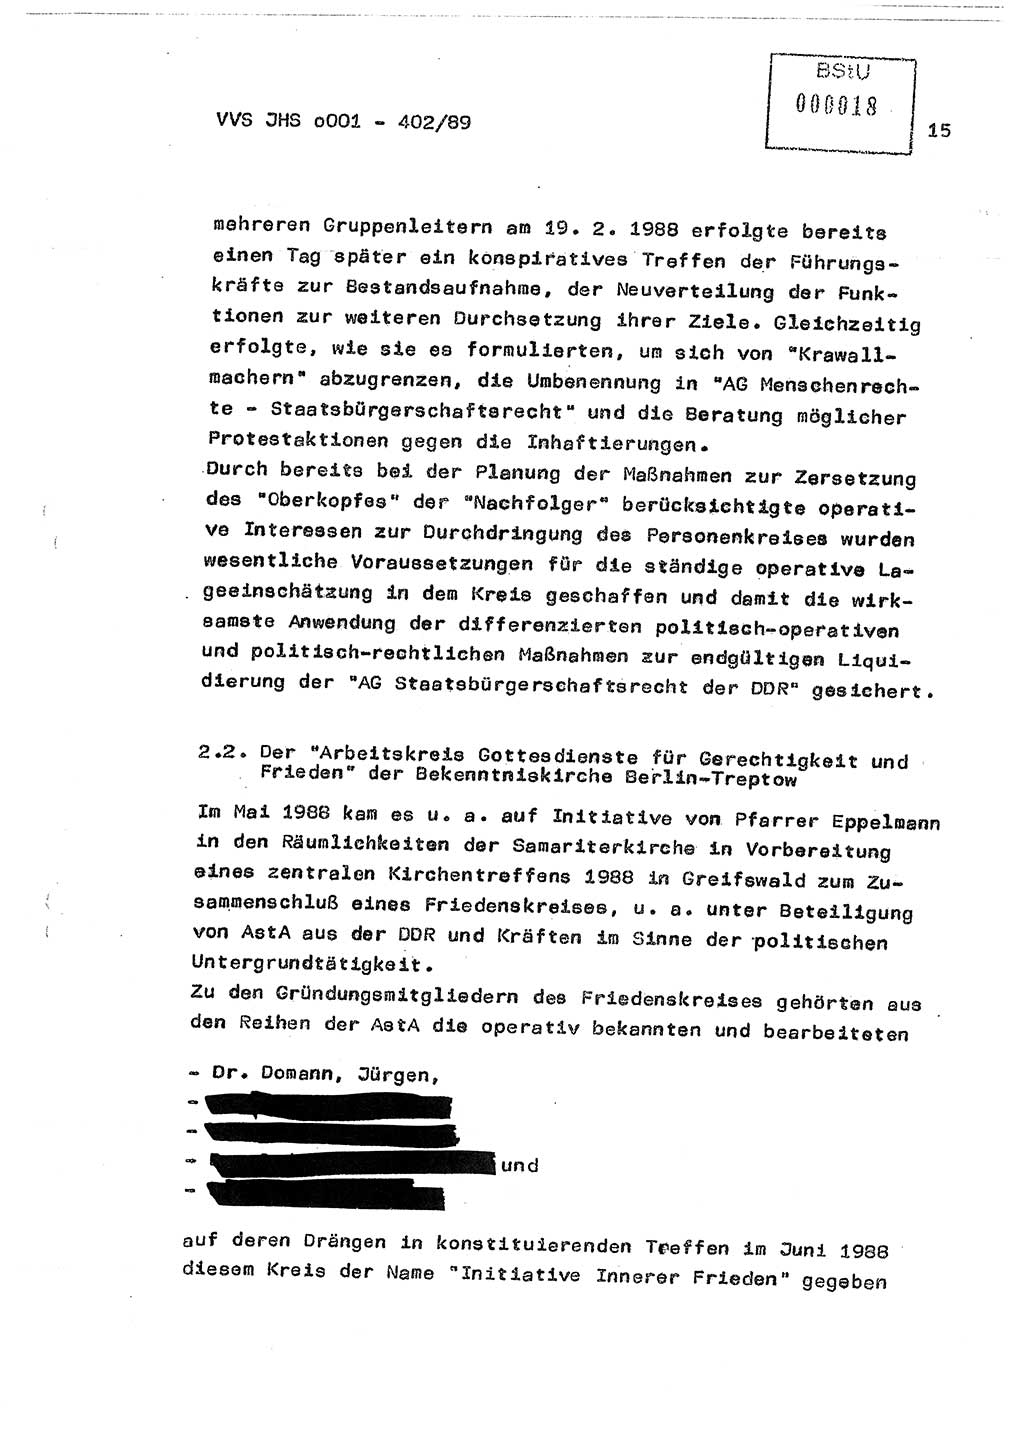 Diplomarbeit Major Günter Müller (HA Ⅸ/9), Ministerium für Staatssicherheit (MfS) [Deutsche Demokratische Republik (DDR)], Juristische Hochschule (JHS), Vertrauliche Verschlußsache (VVS) o001-402/89, Potsdam 1989, Seite 15 (Dipl.-Arb. MfS DDR JHS VVS o001-402/89 1989, S. 15)